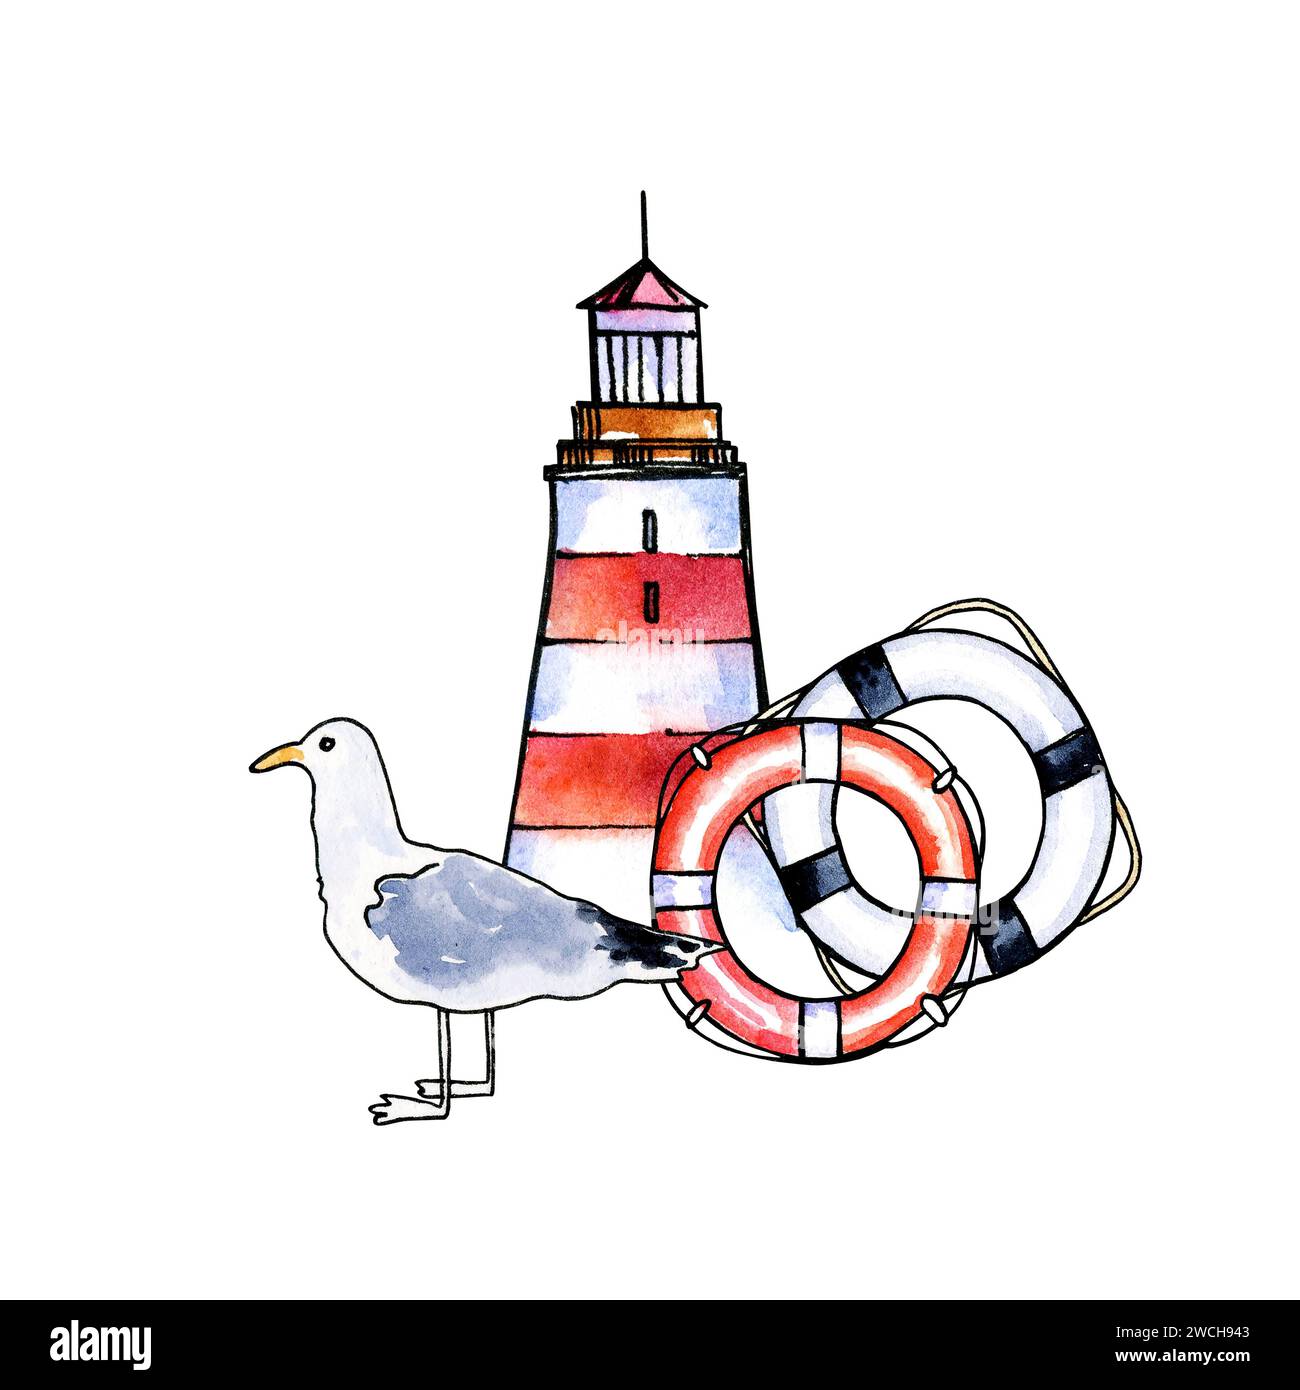 composition dessinée à la main aquarelle avec phare, différentes lignes de vie rayées et oiseaux de mer, illustration marine, couleur rouge et bleue isolée sur blanc Banque D'Images